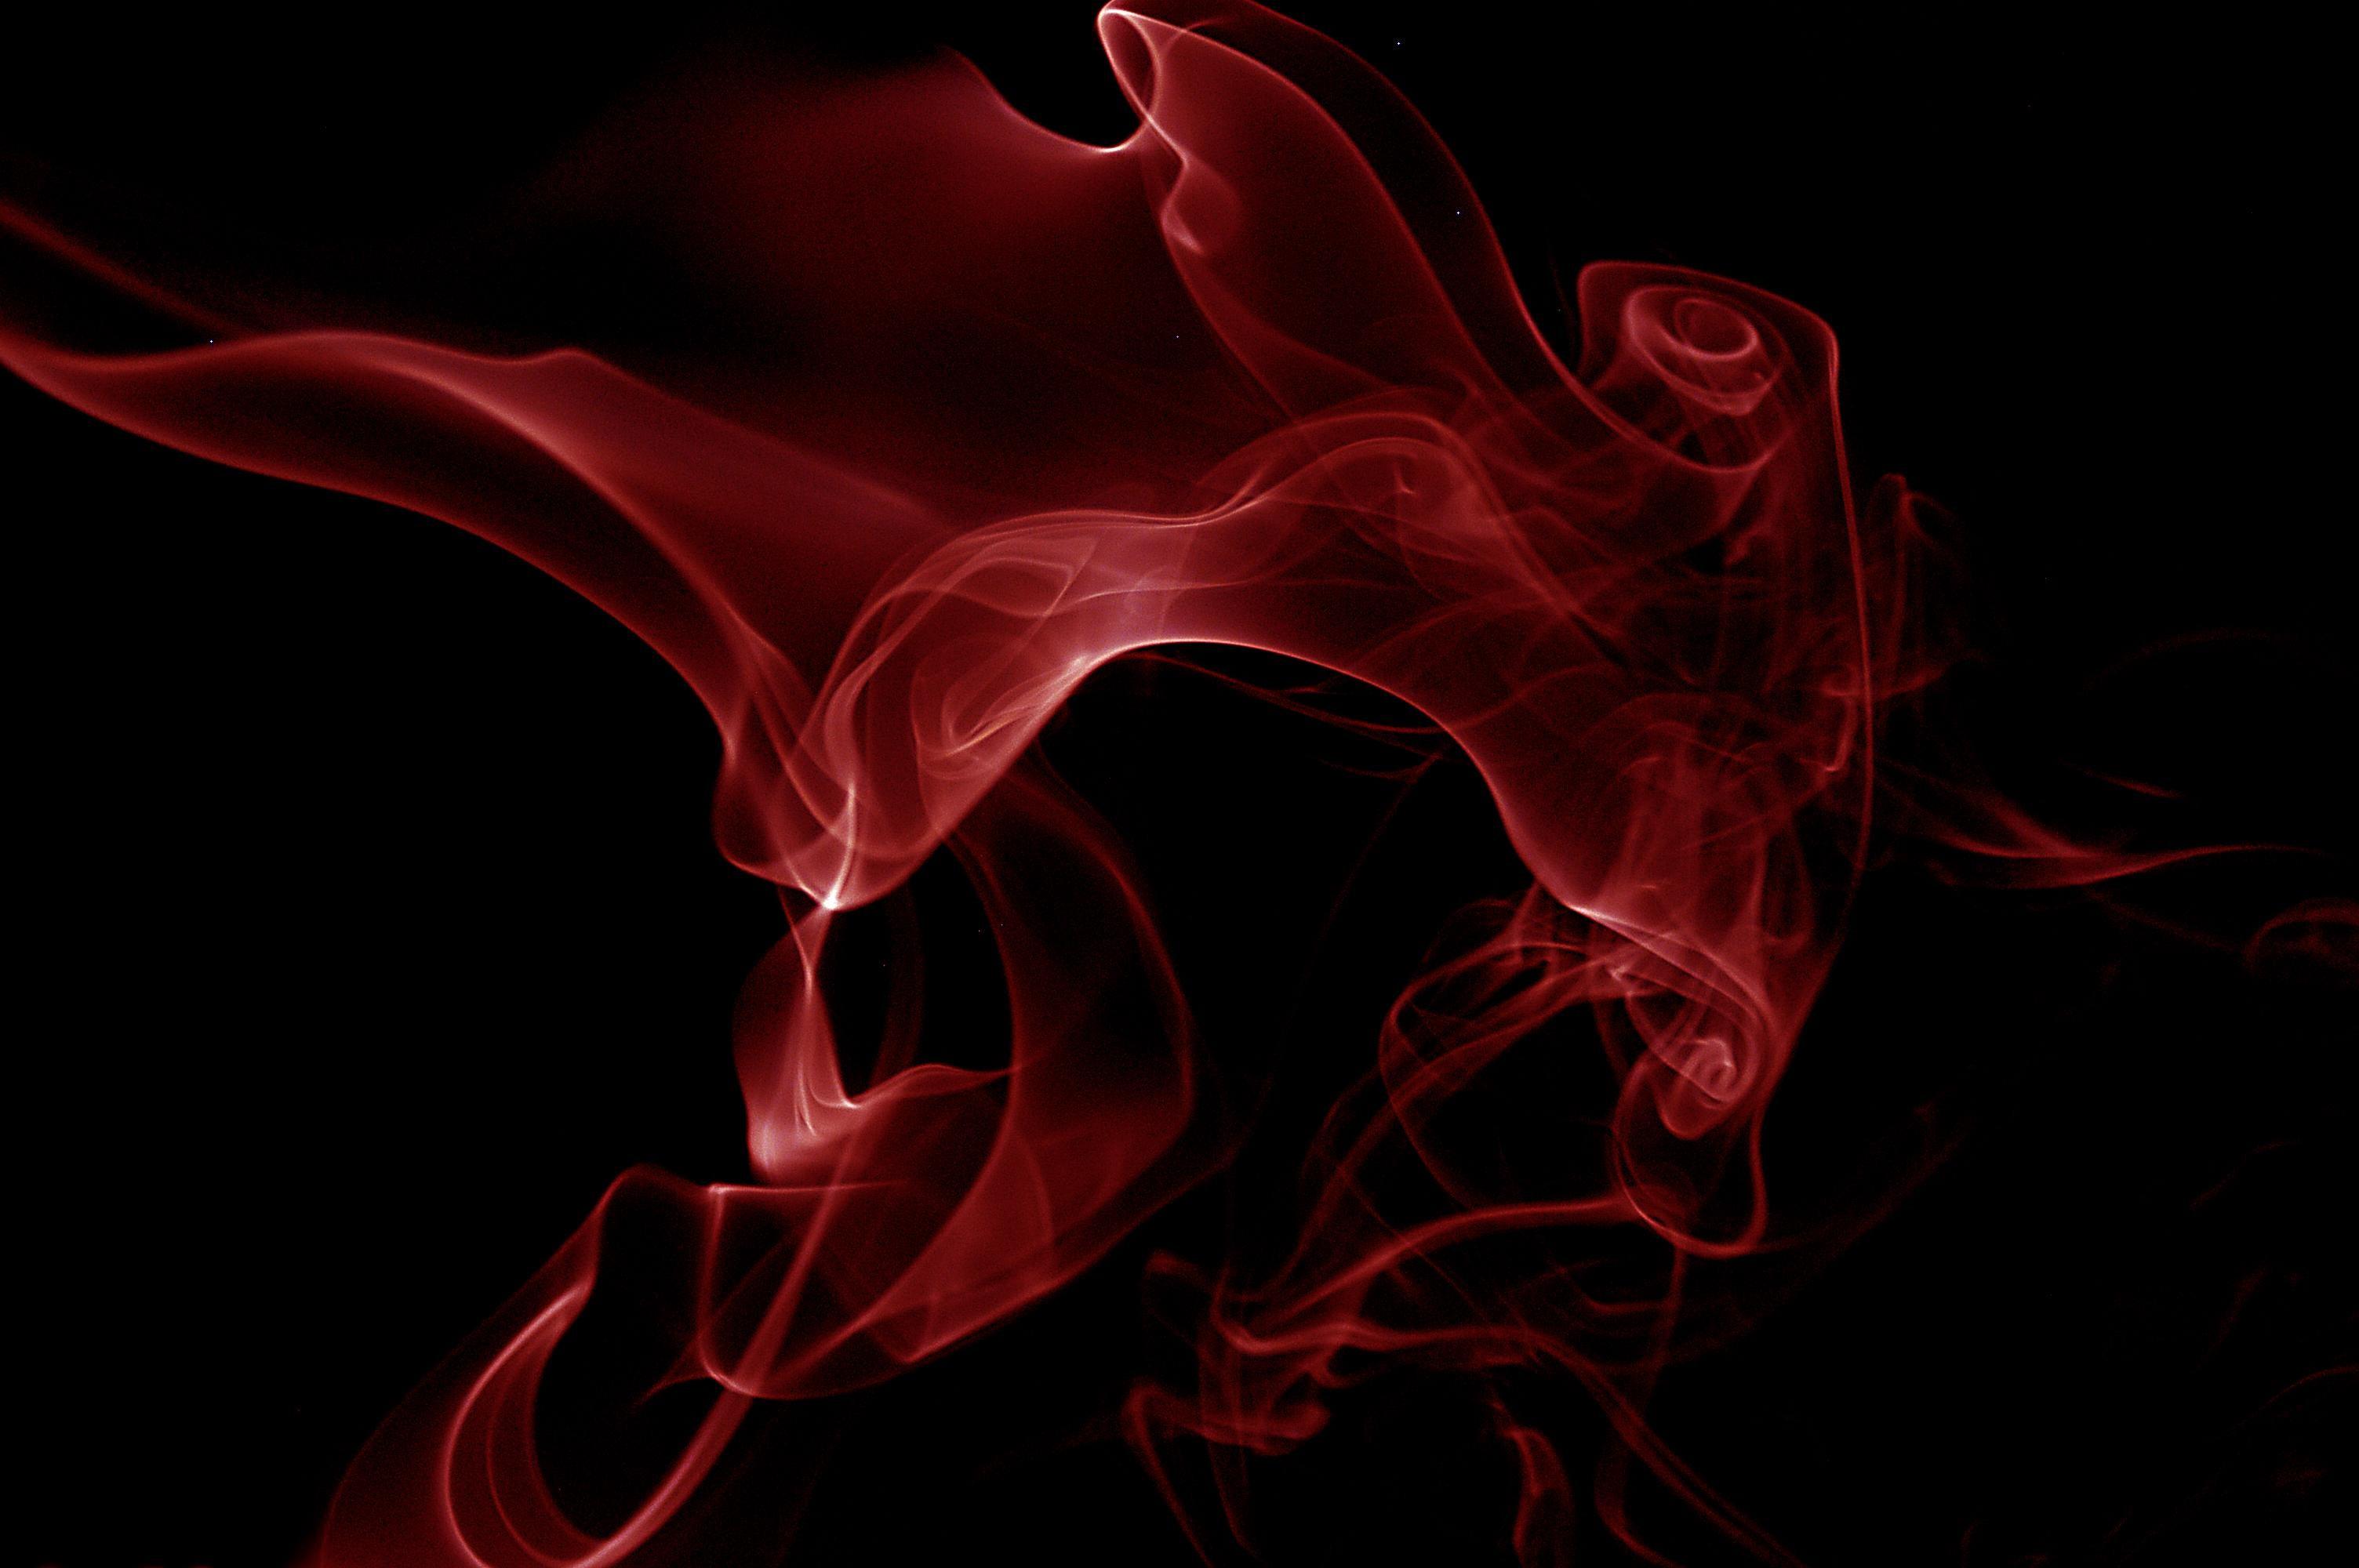 schwarze und rote tapete,rauch,rot,grafik,cg kunstwerk,grafikdesign